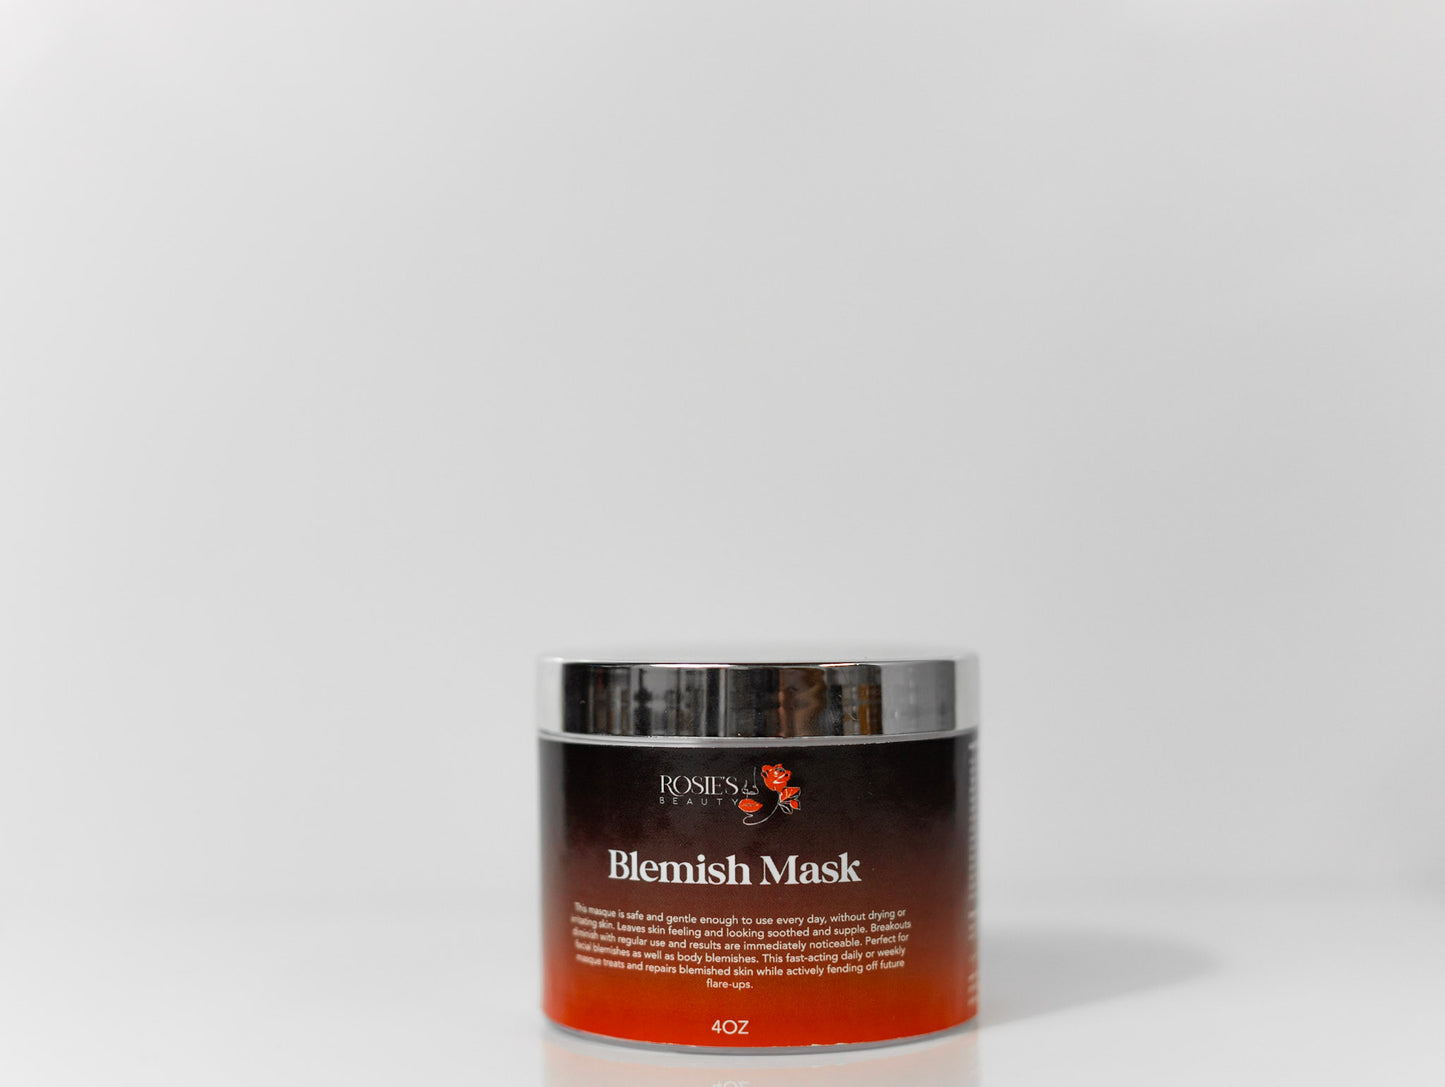 Blemish mask